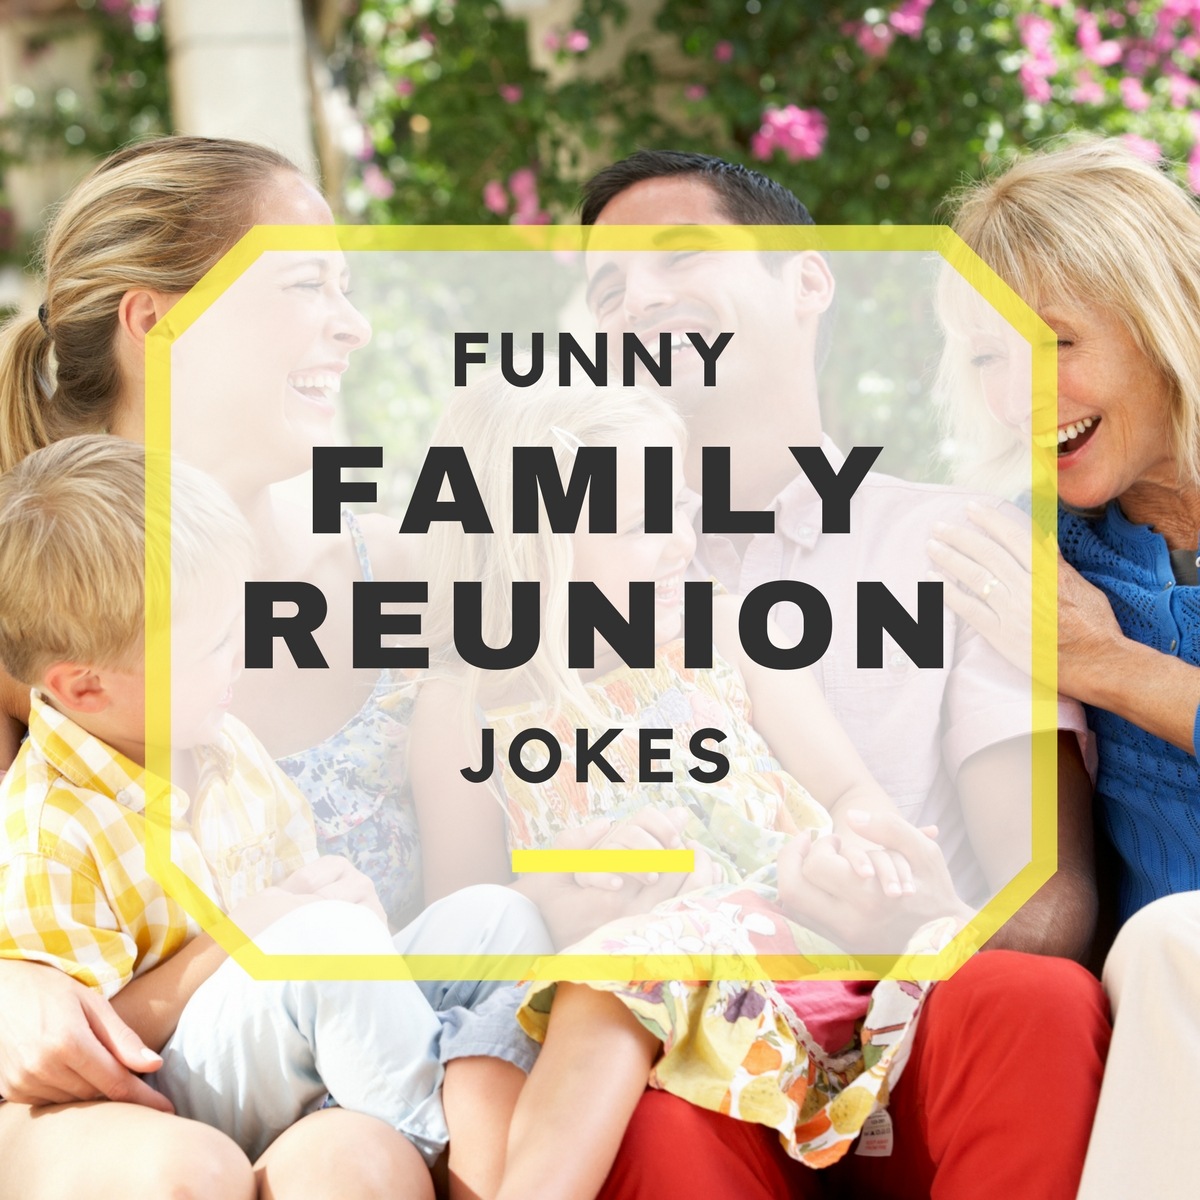 21 Funny Family Reunion Jokes